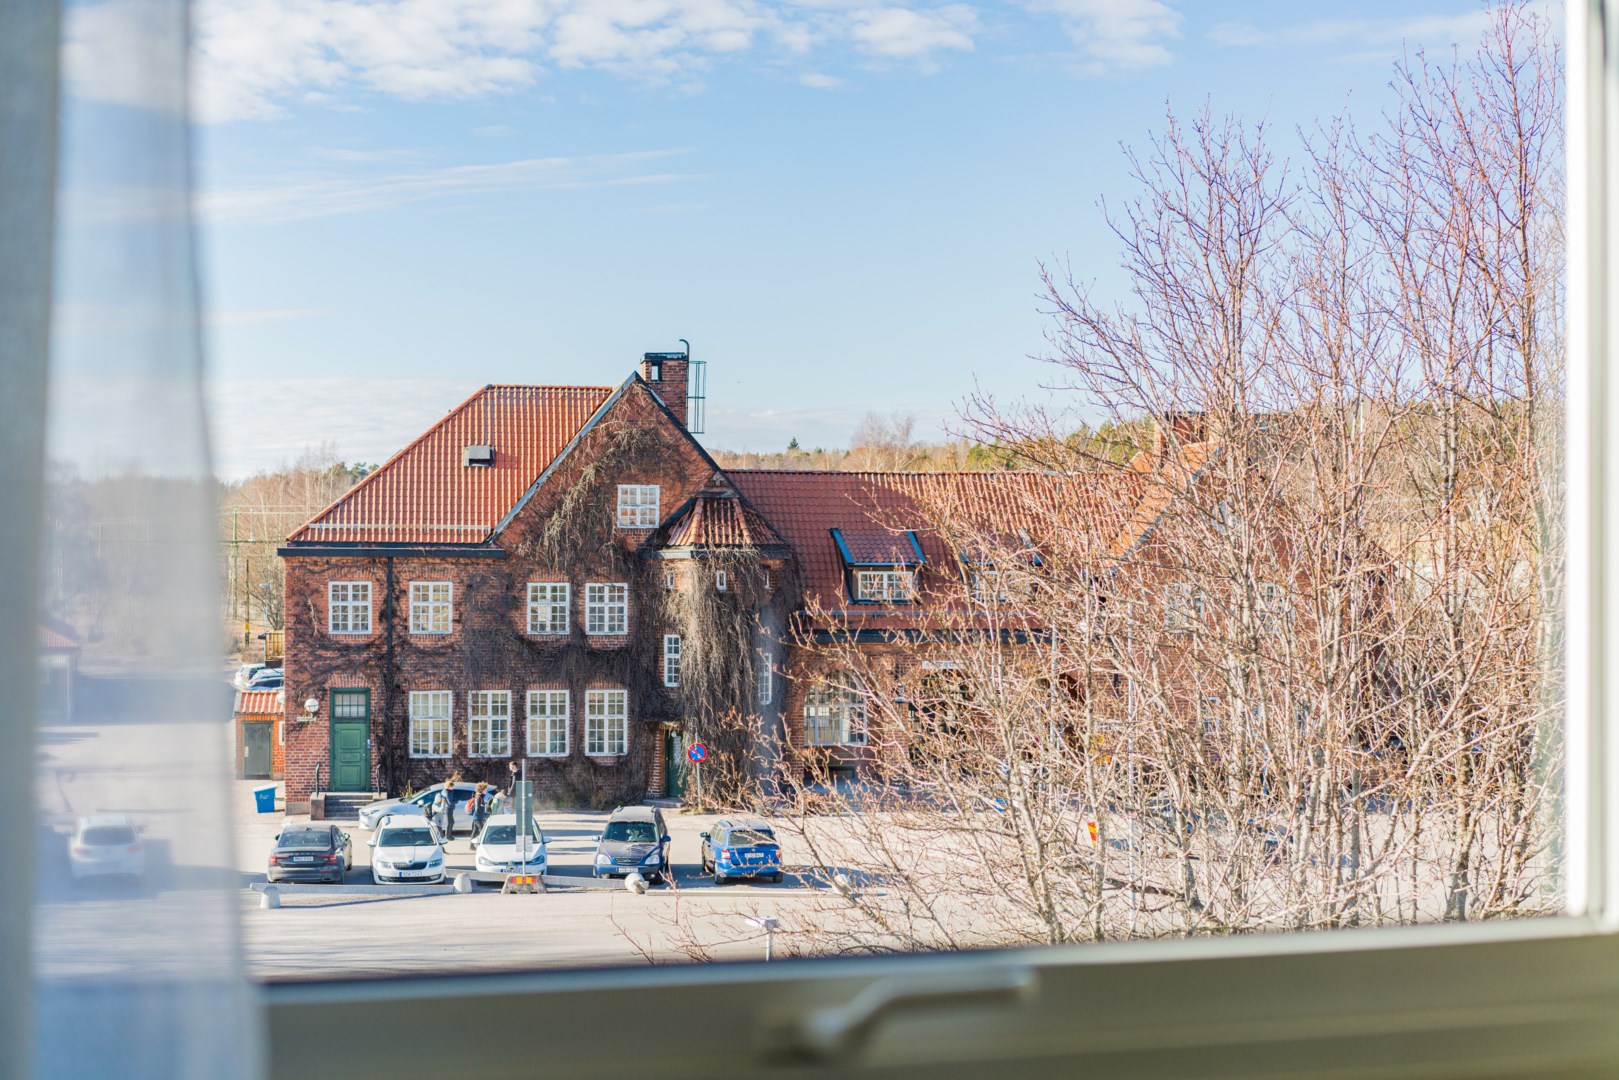 Bostadsrätt i Centralt Väster, Nyköping, Sverige, Järnvägsgatan 46A